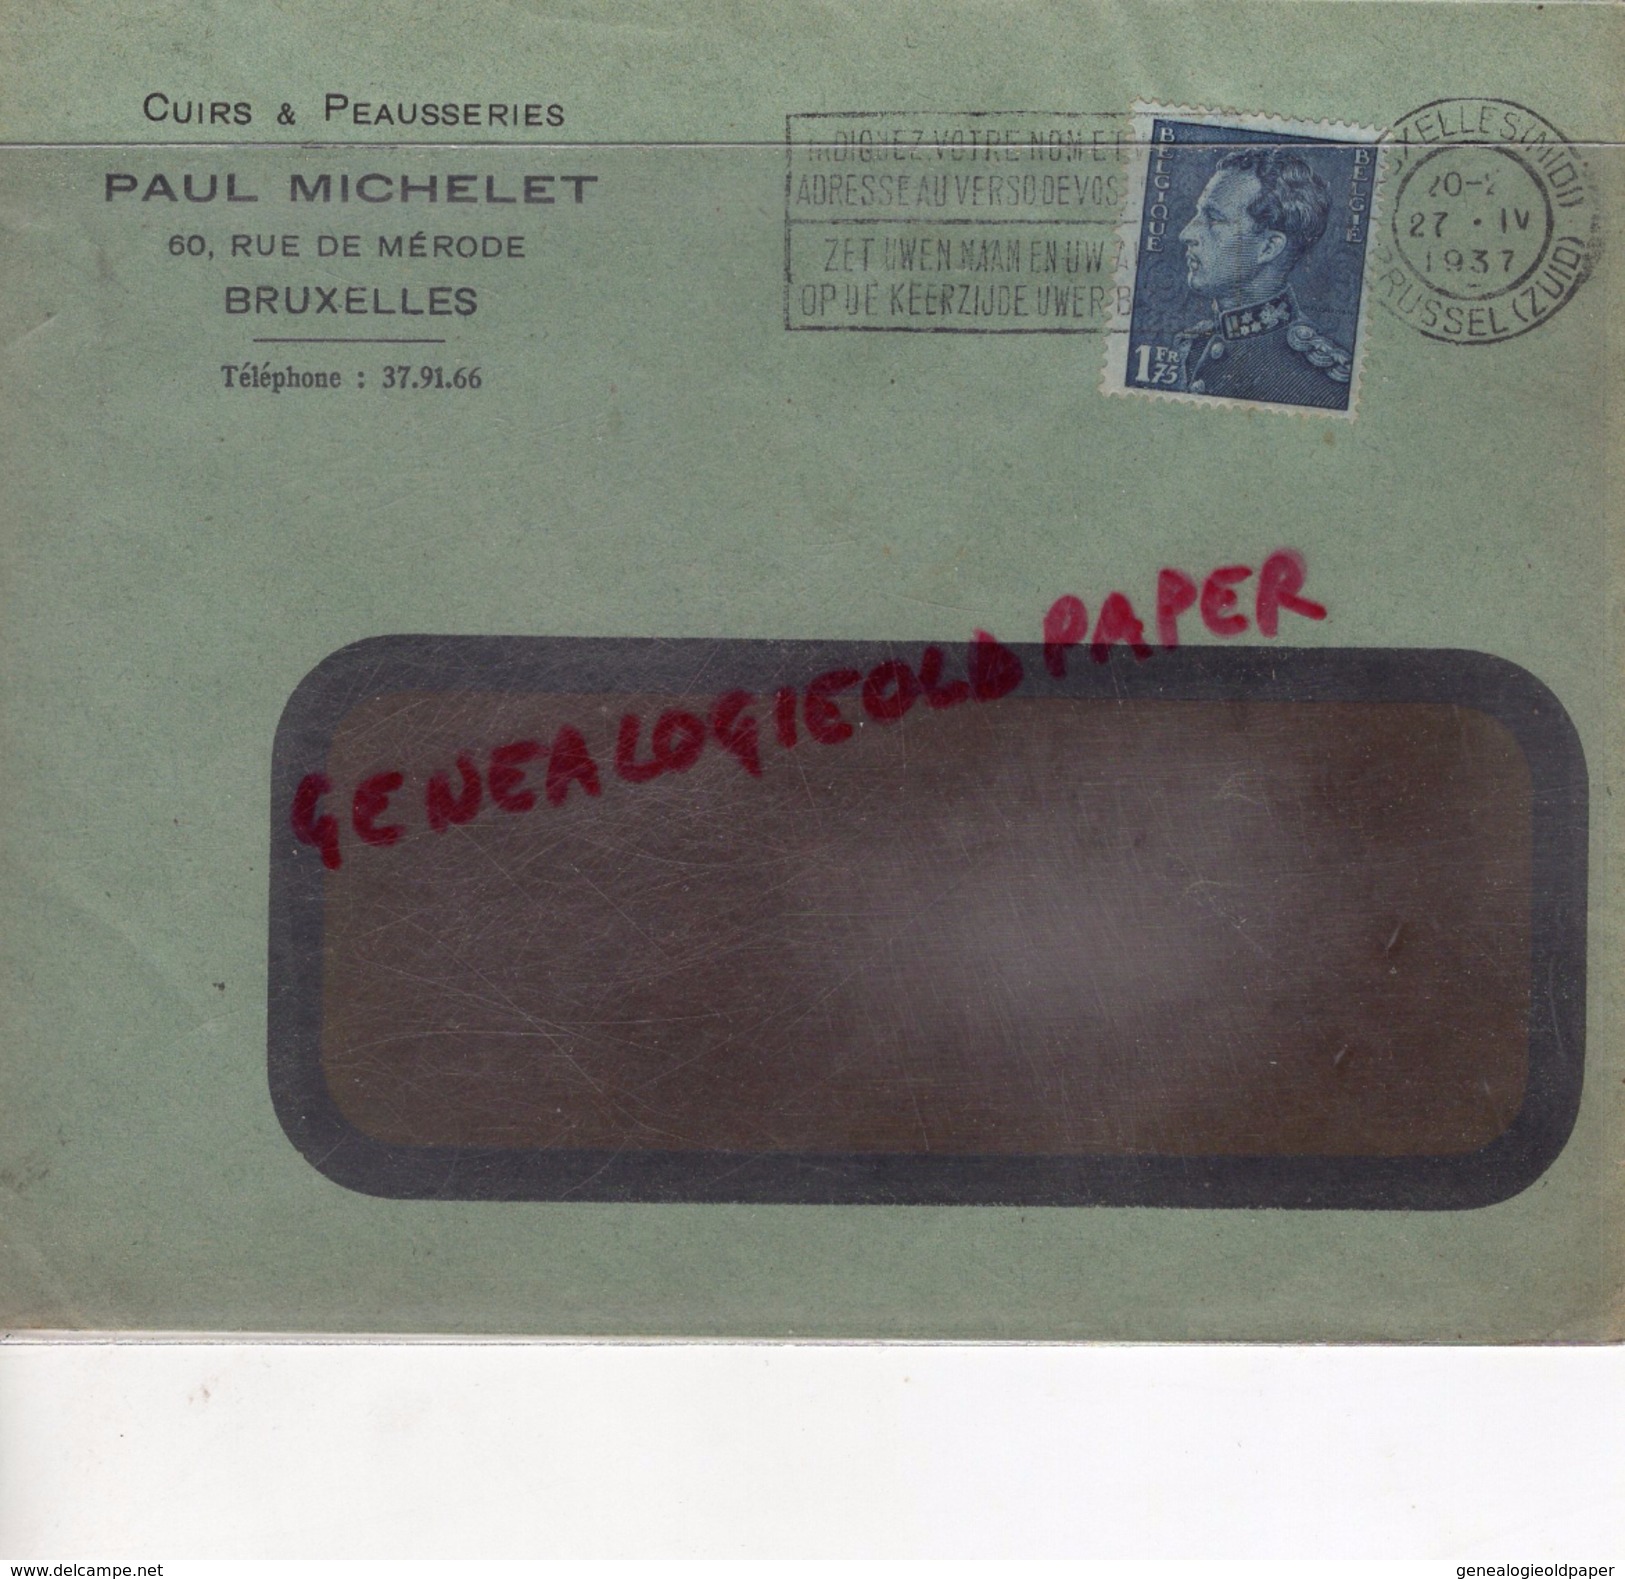 BELGIQUE - BRUXELLES- PAUL MICHELET -CUIRS PEAUSSERIES-MEGISSERIE-60 RUE DE MERODE- 1937 GANTERIE TANNERIE - 1900 – 1949